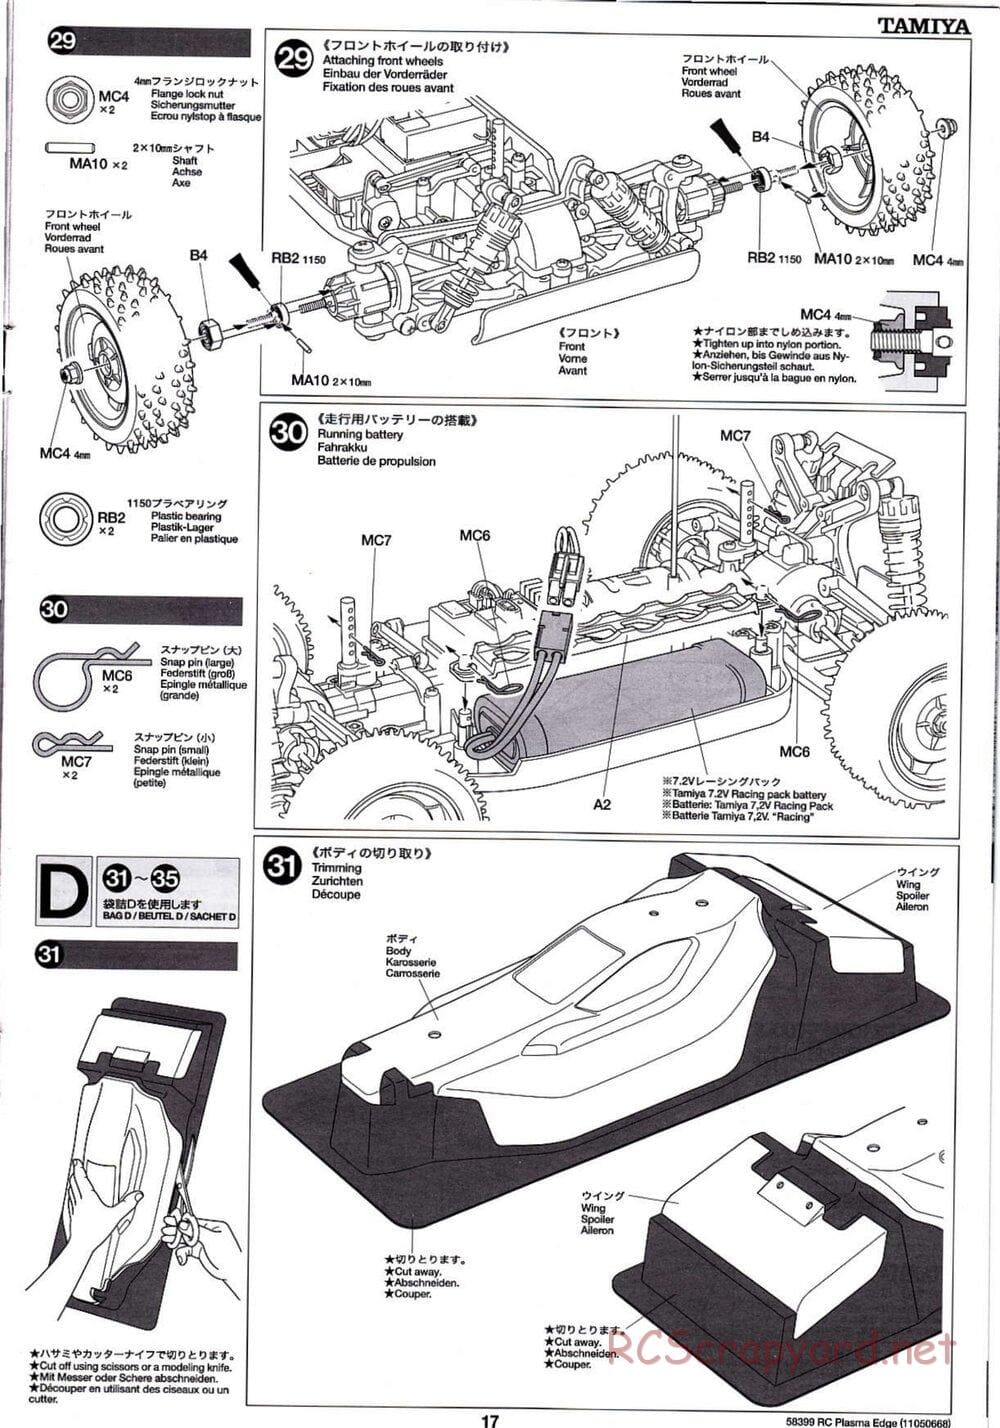 Tamiya - Plasma Edge Chassis - Manual - Page 17